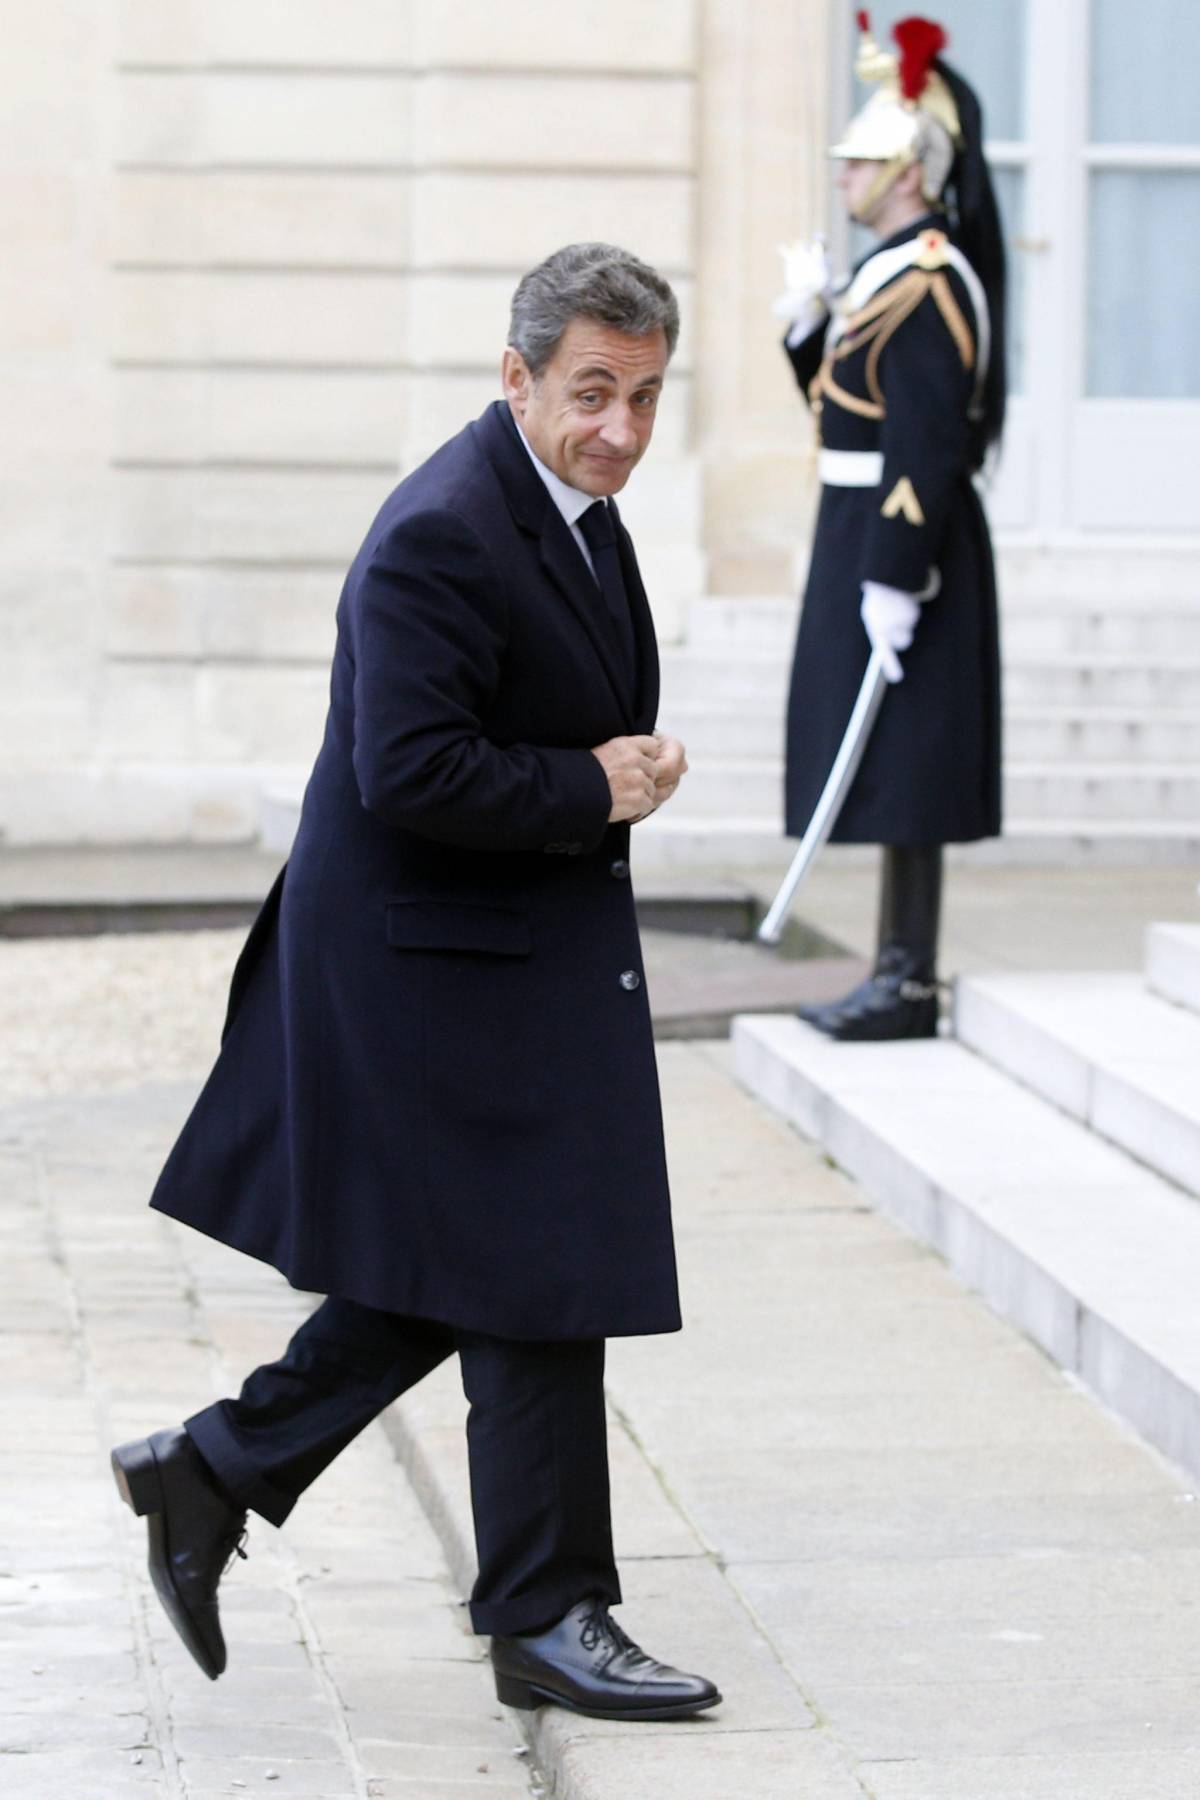 Finanziamenti illeciti, Sarkozy sotto interrogatorio